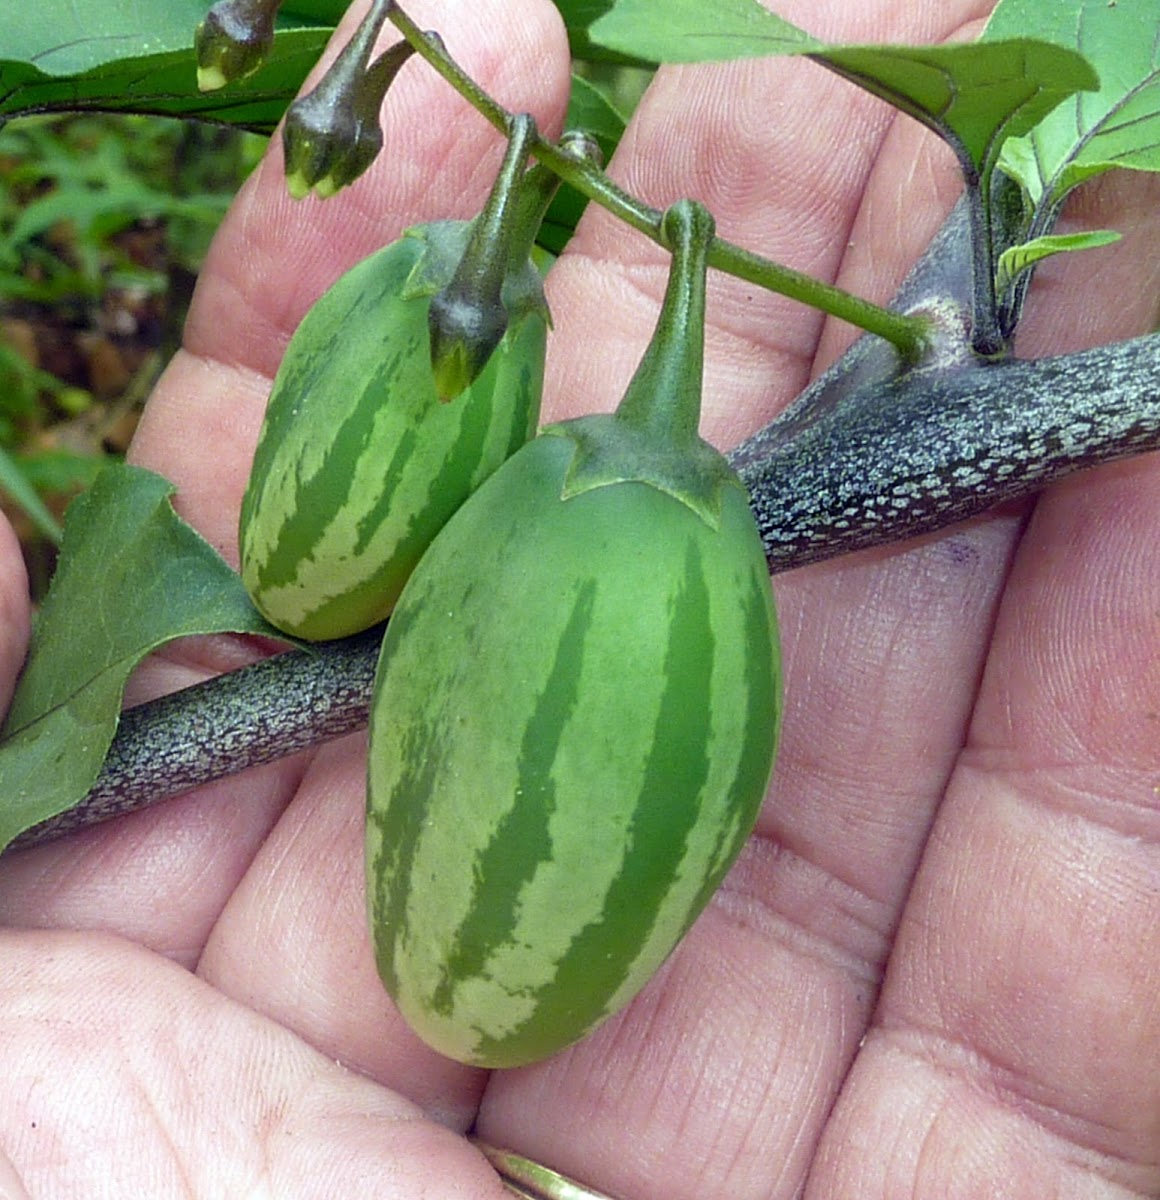 Wild eggplant